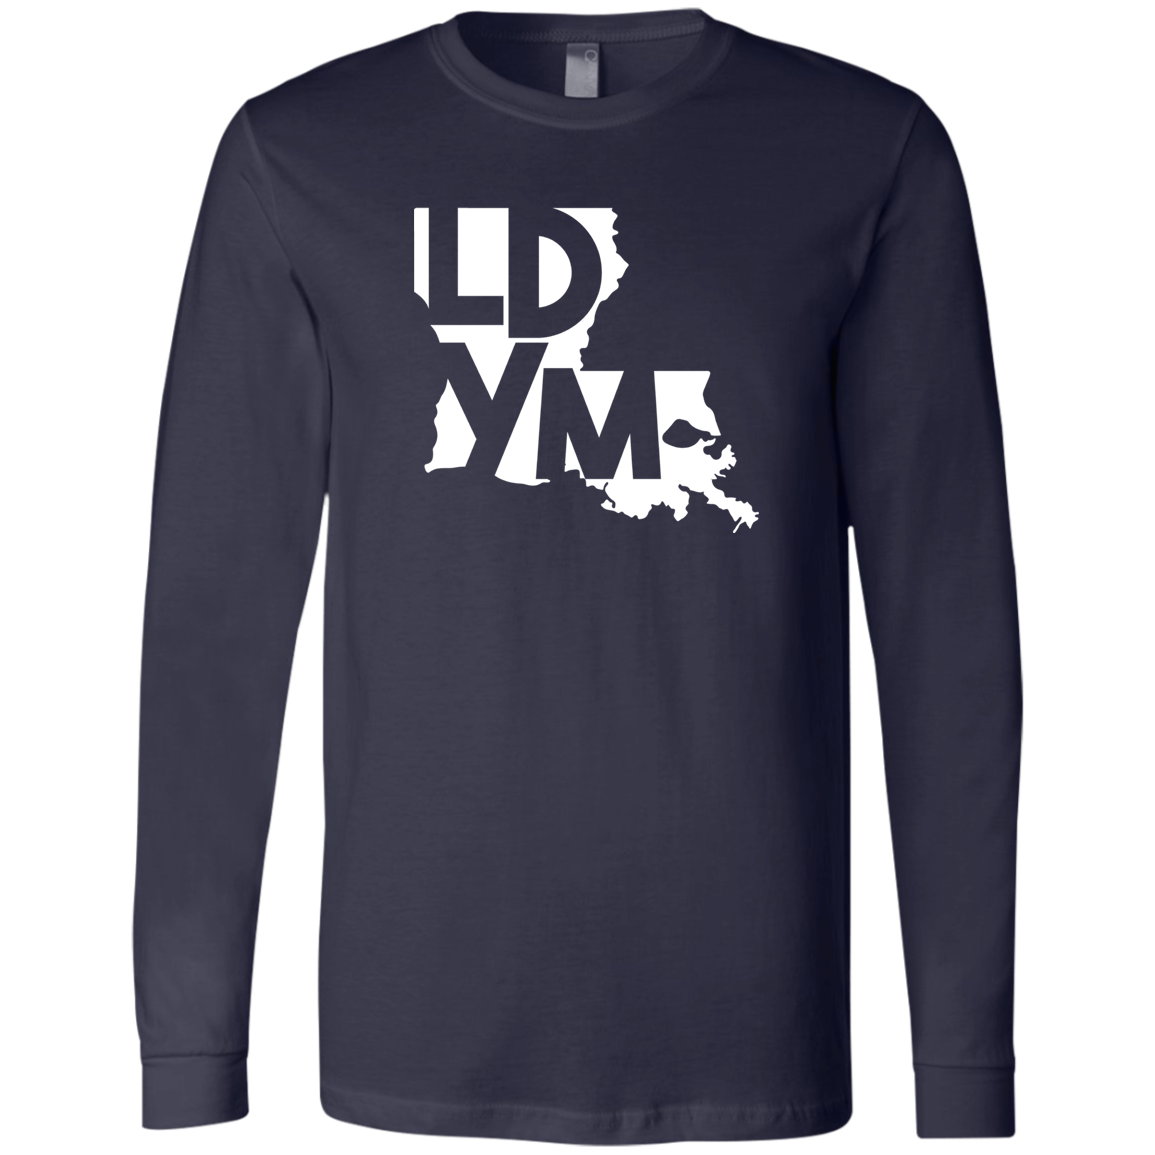 LDYM - Tshirts - Long Sleeve & Short Sleeve